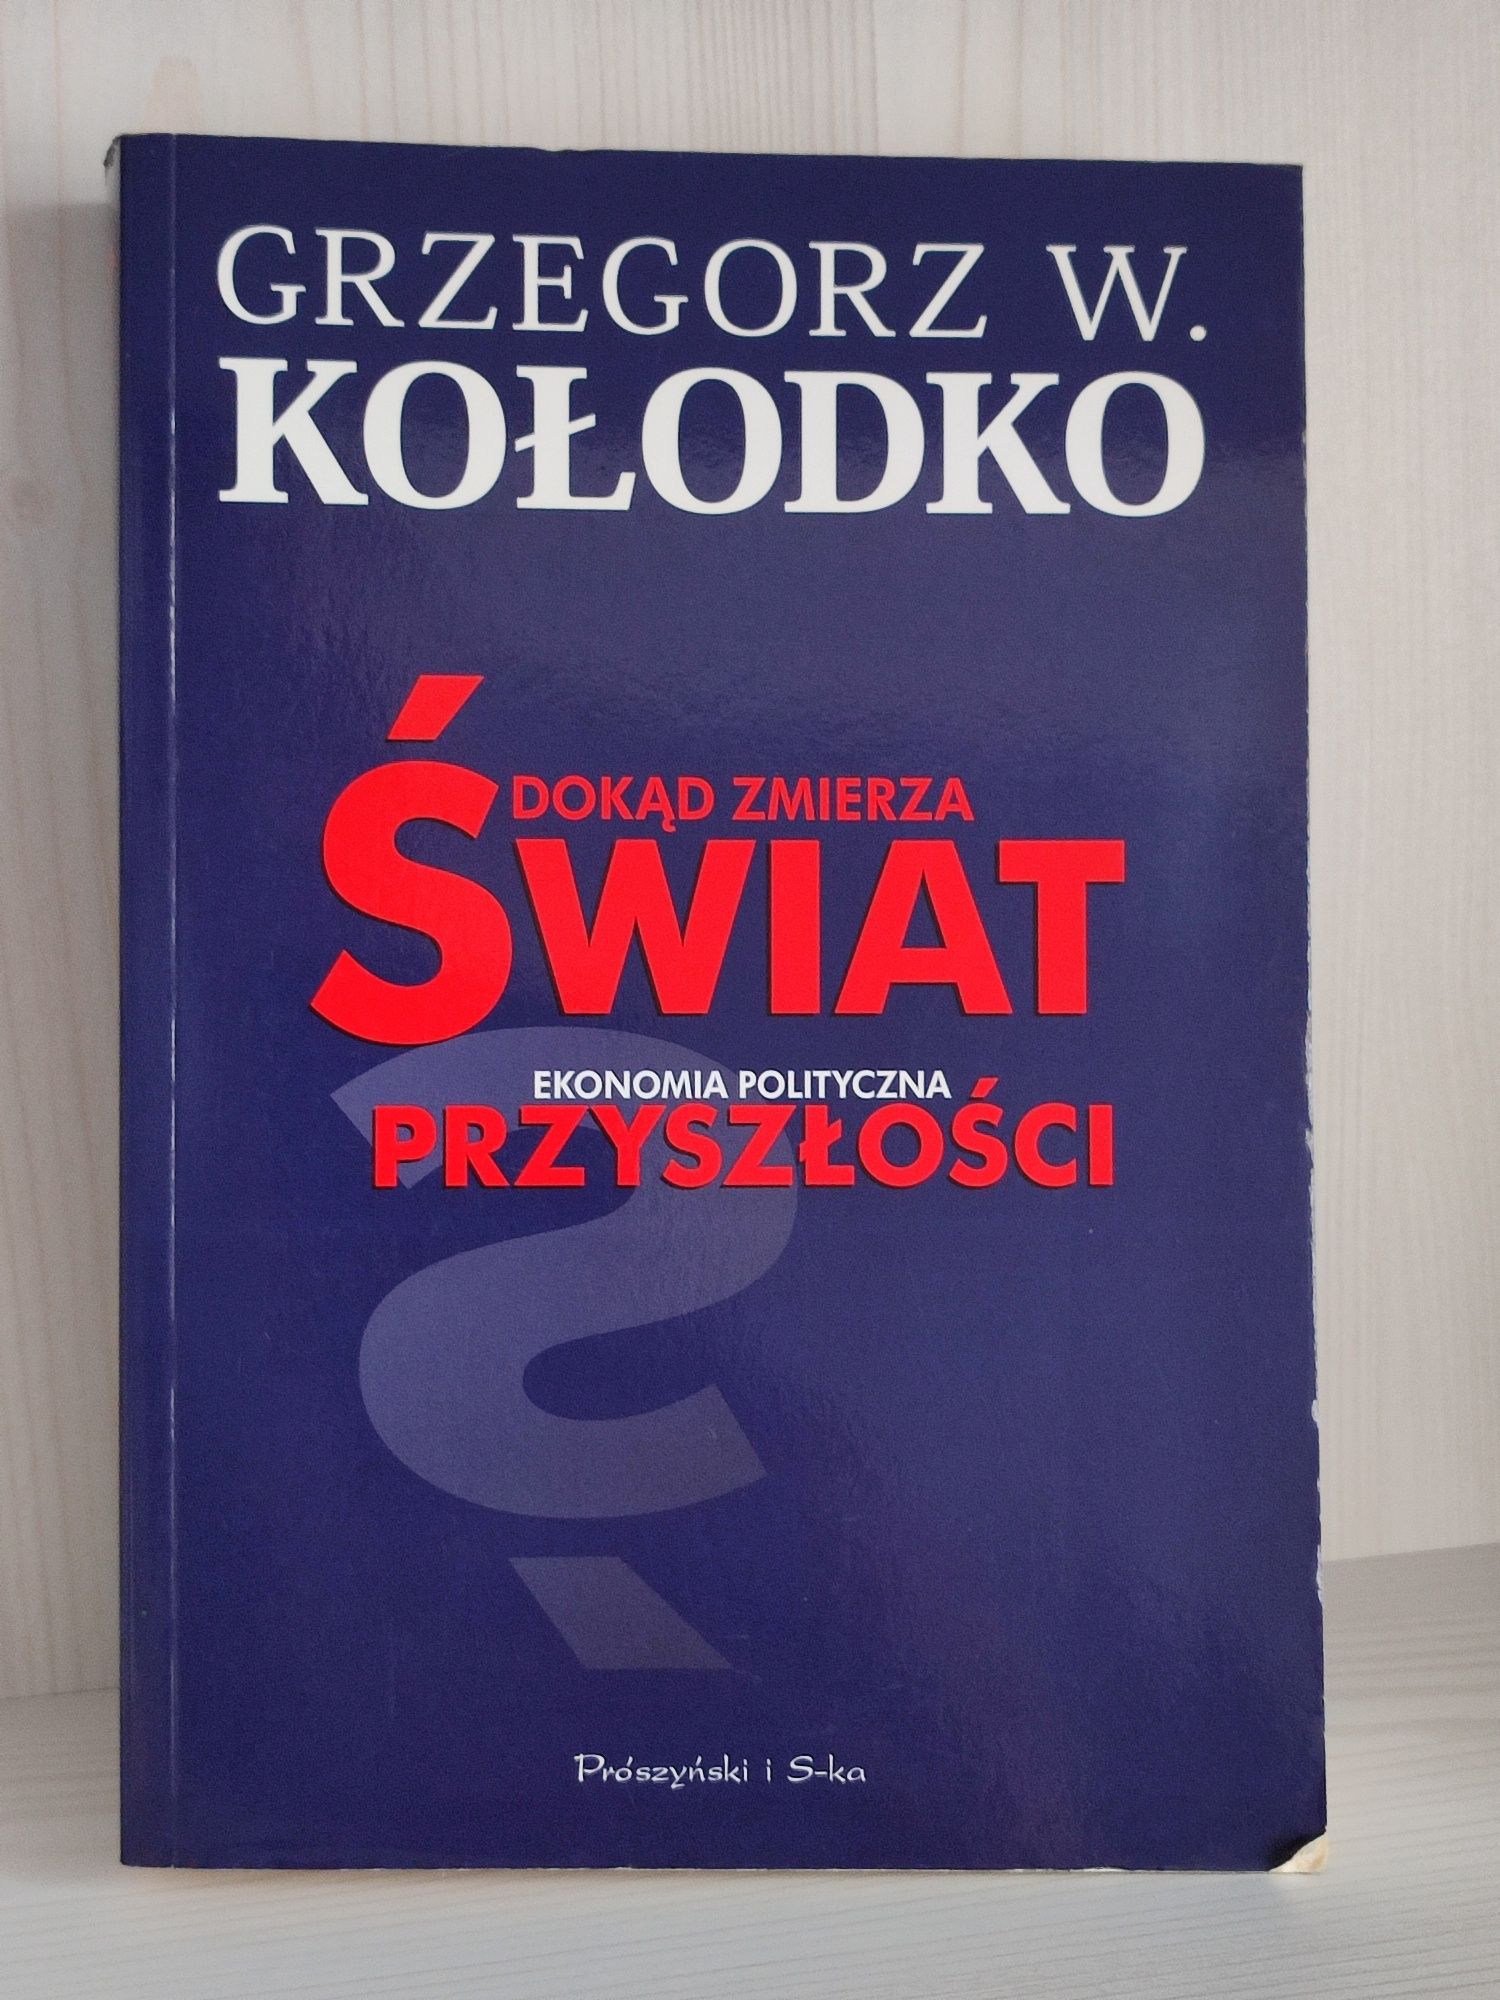 Książka Grzegorz Kołodko Dokad zmierza świat